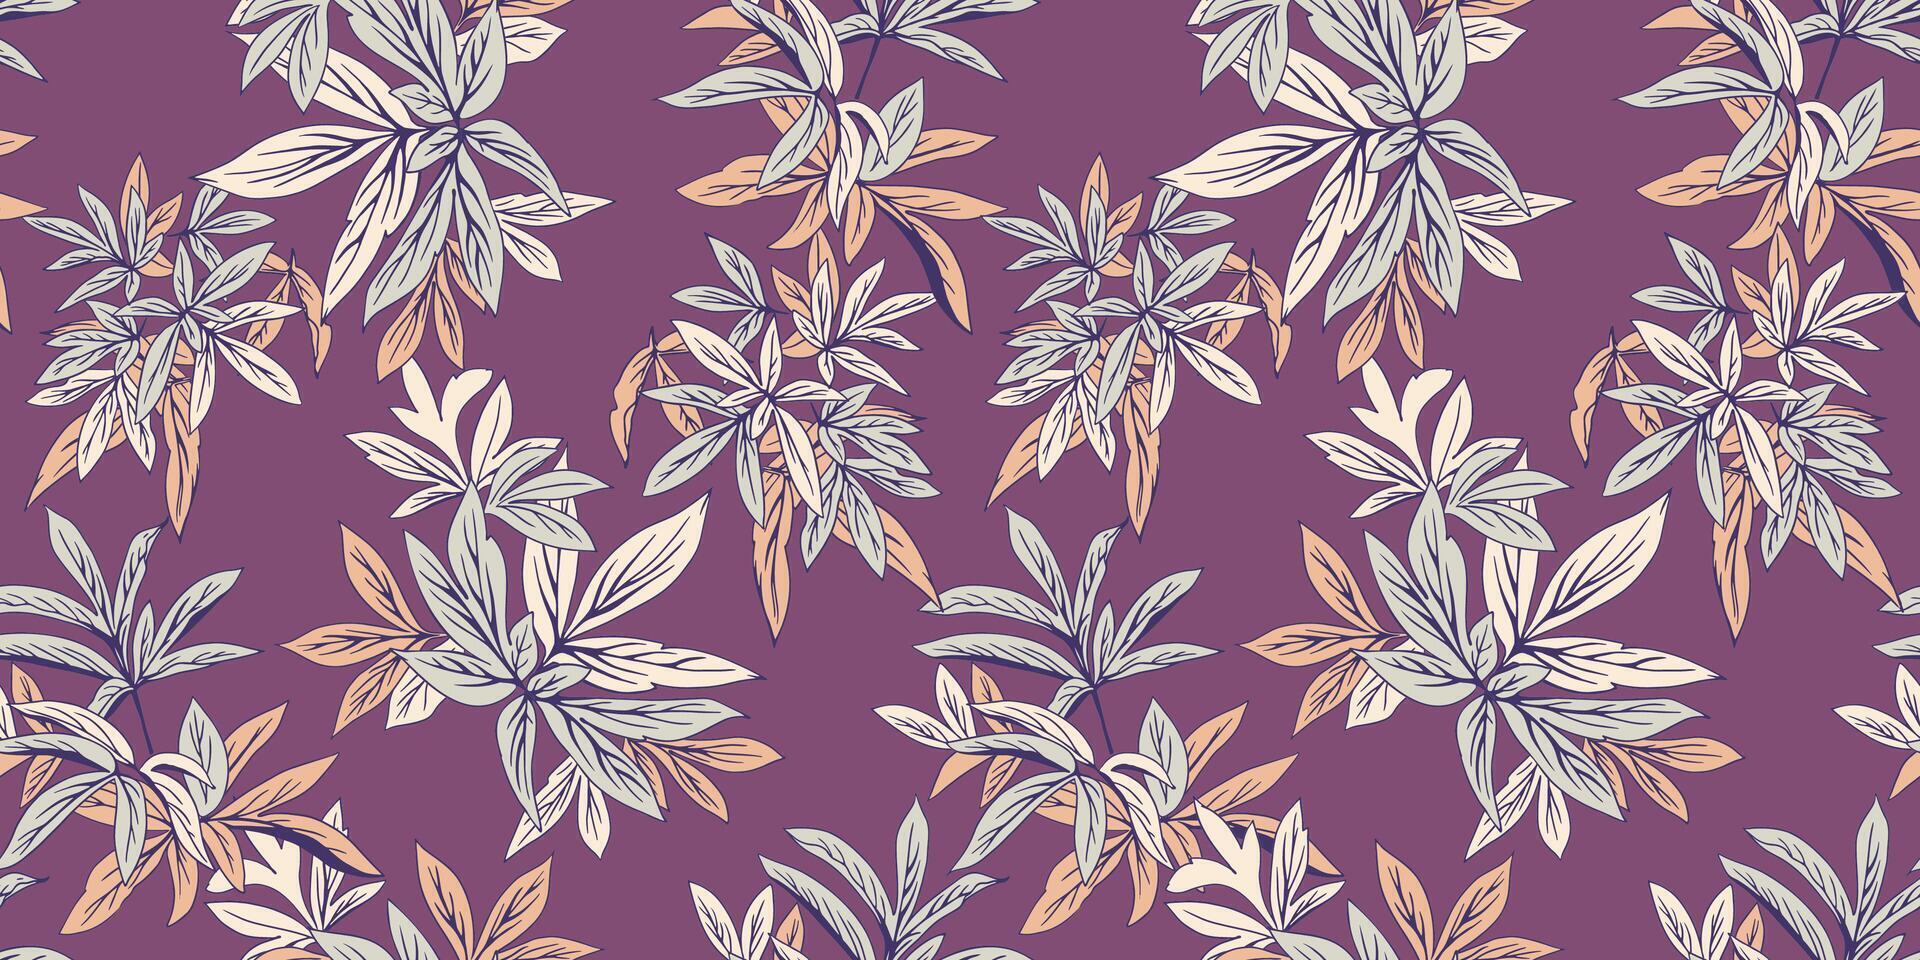 abstrakt künstlerisch Urwald nahtlos Muster mit Blatt Stängel auf ein lila Hintergrund. bunt kreativ botanisch Blumen- Blätter Drucken. Hand gezeichnet vektor